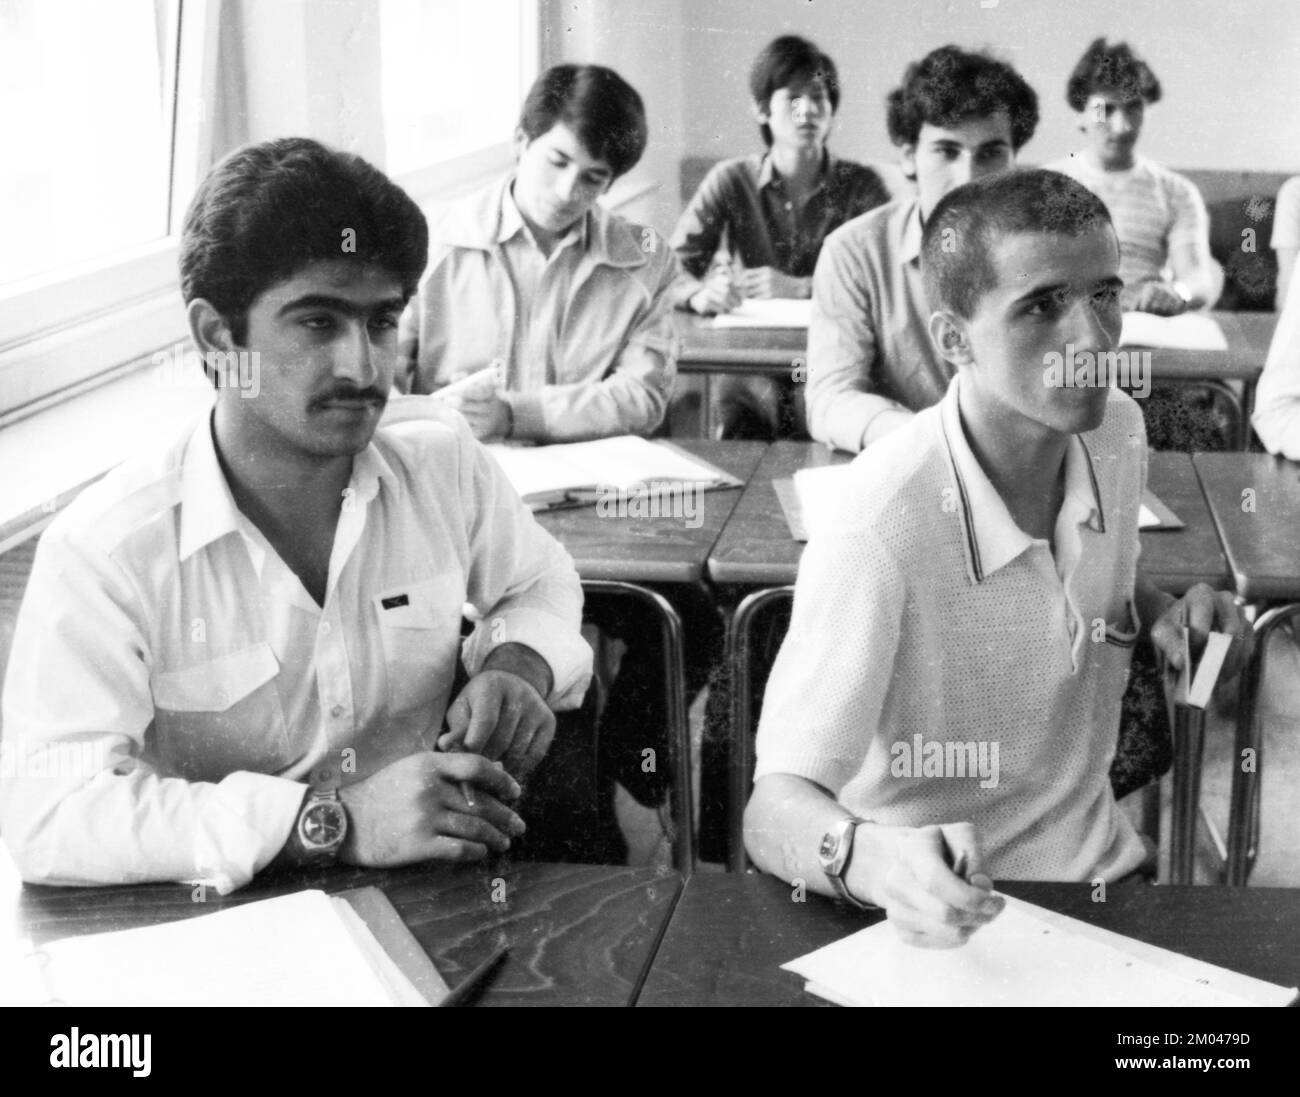 Cours dans une école professionnelle en juillet 1981, Allemagne, Europe Banque D'Images